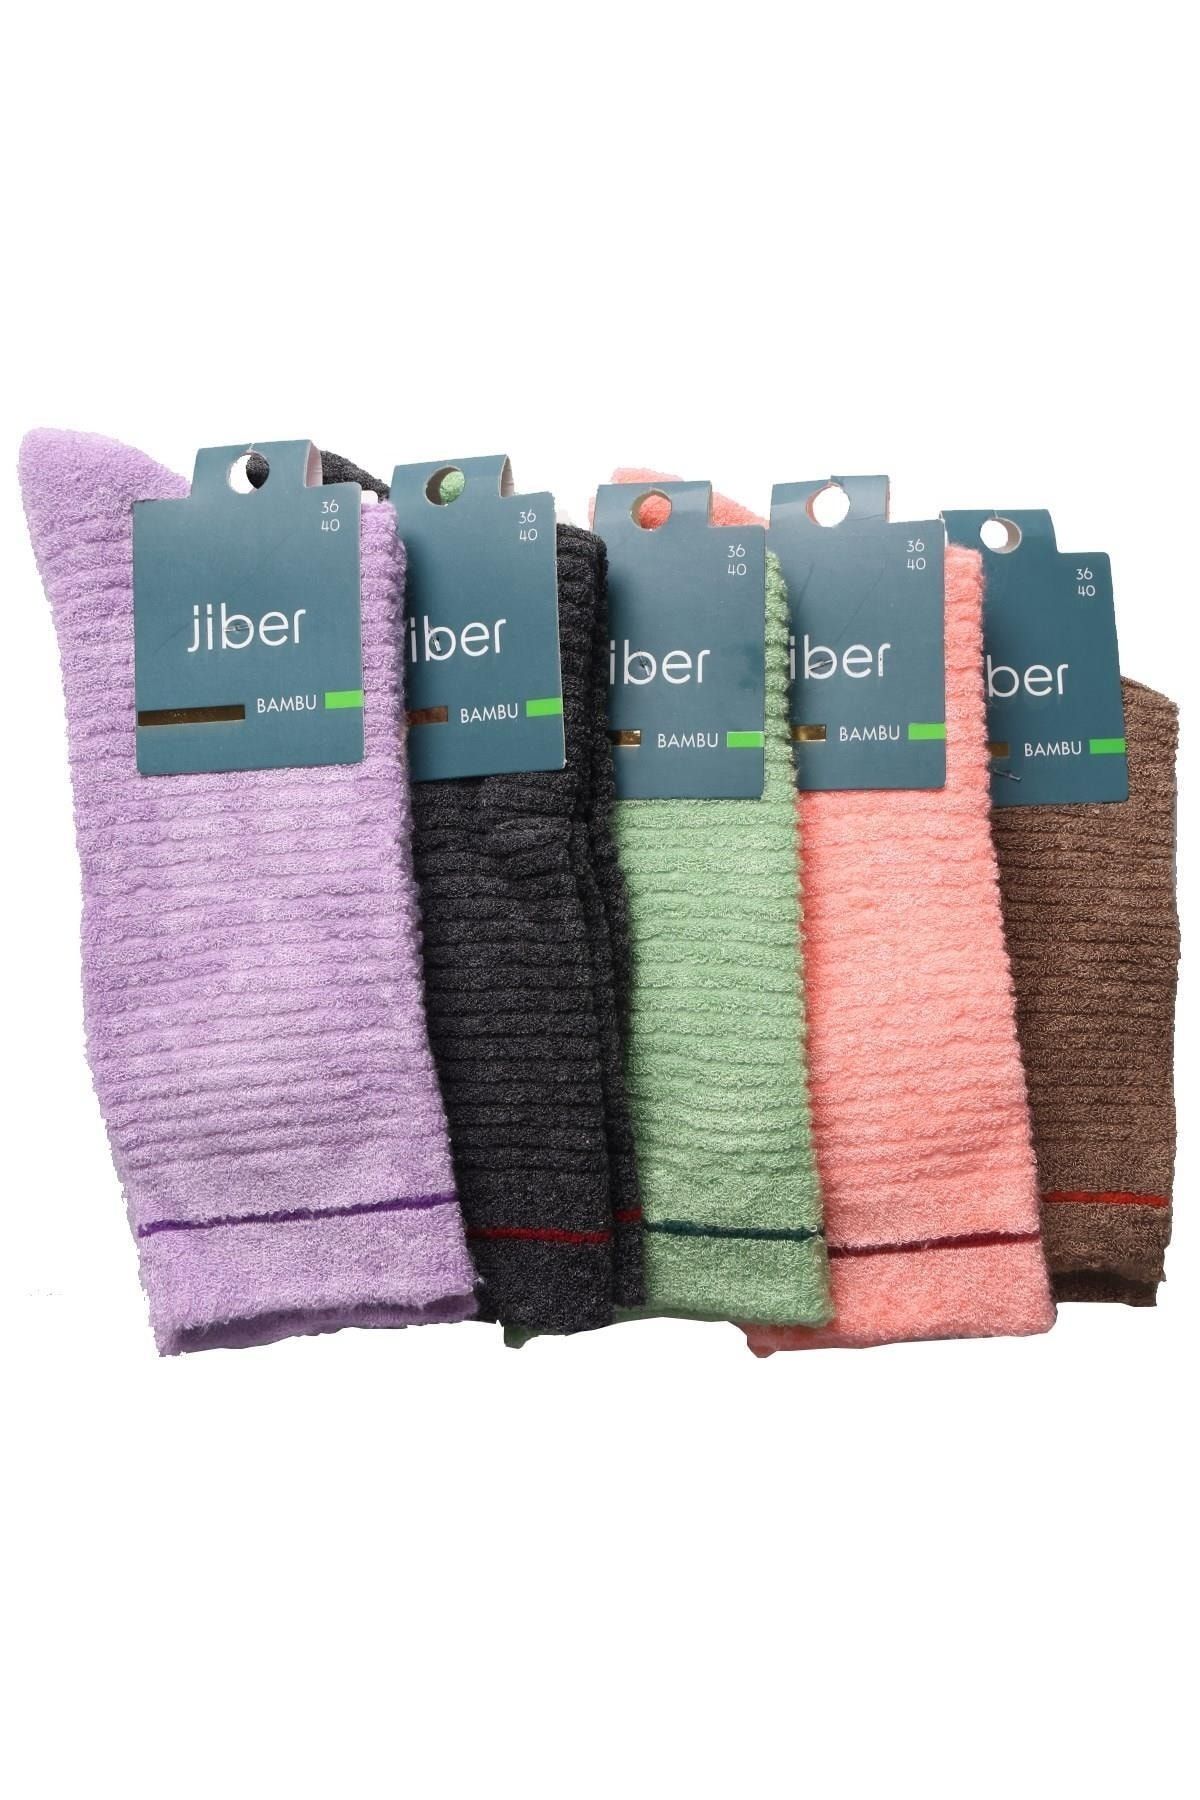 Jiber Kadın Bambu Ters Havlu Soket Çorap 6955 - 12 Adet